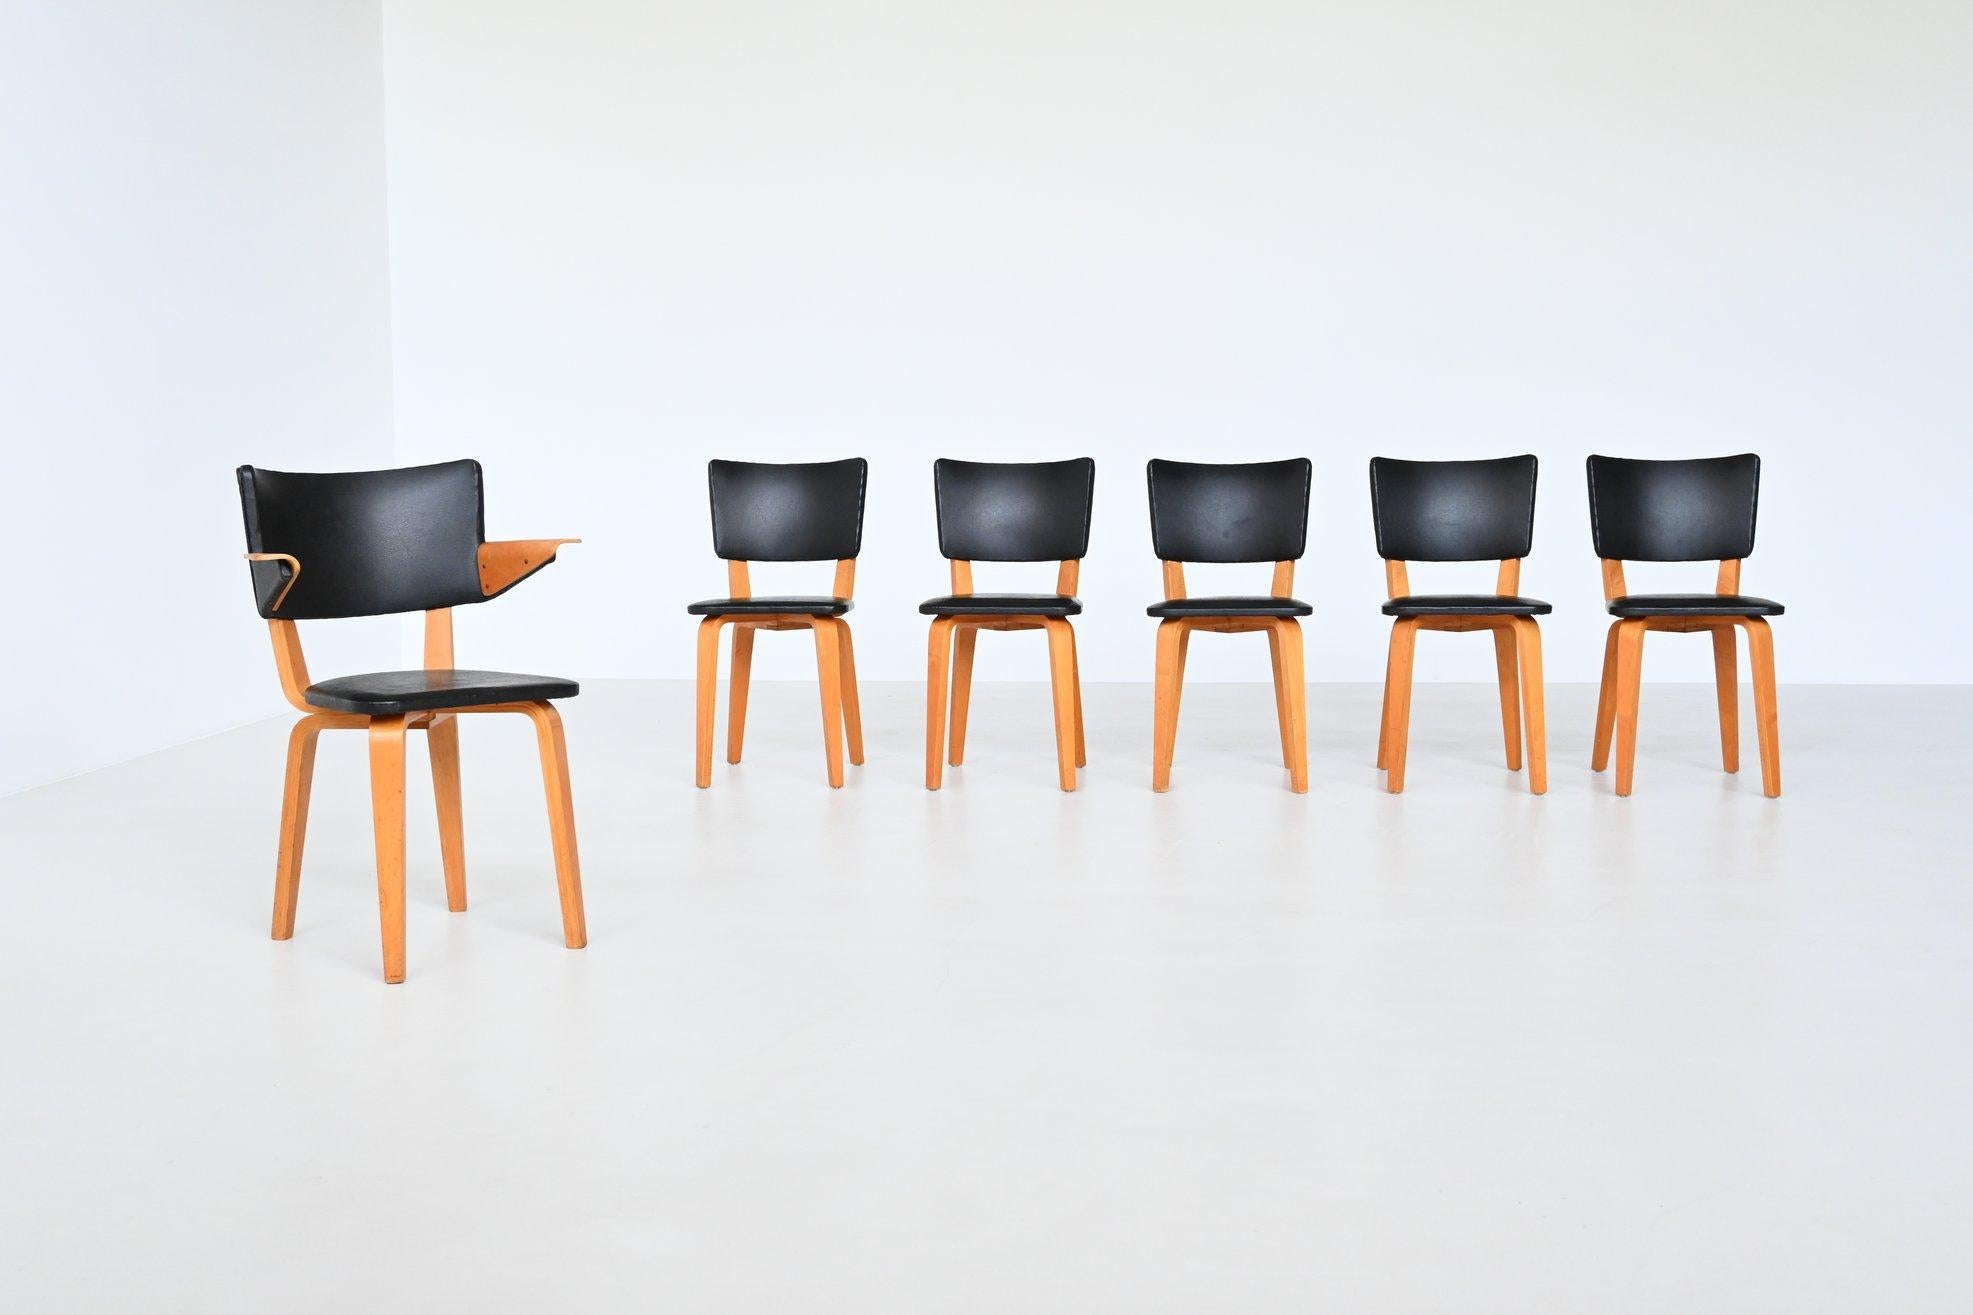 Sehr schöner und origineller Satz von sechs Esszimmerstühlen Modell 500, entworfen von COR Alons & J.C. Jansen und hergestellt von Gouda den Boer, Niederlande 1949. Diese Stühle sind aus Birkensperrholz gefertigt und mit der gleichen Technik wie